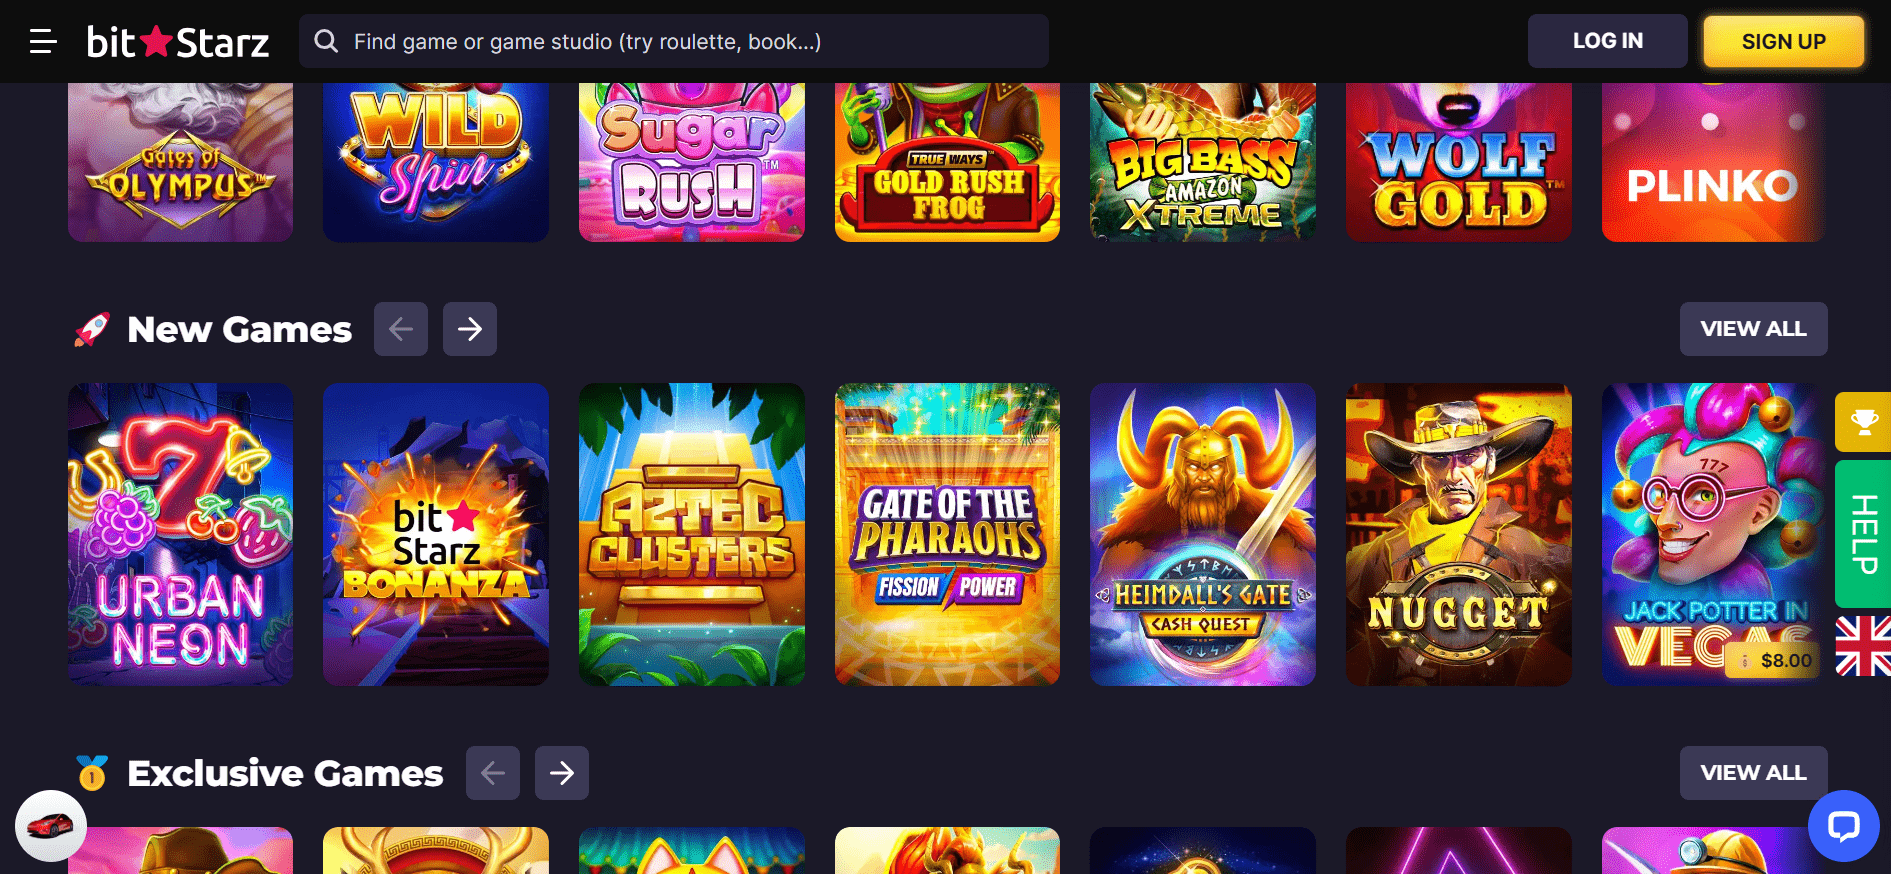 Bitstarz casino homepage game selection